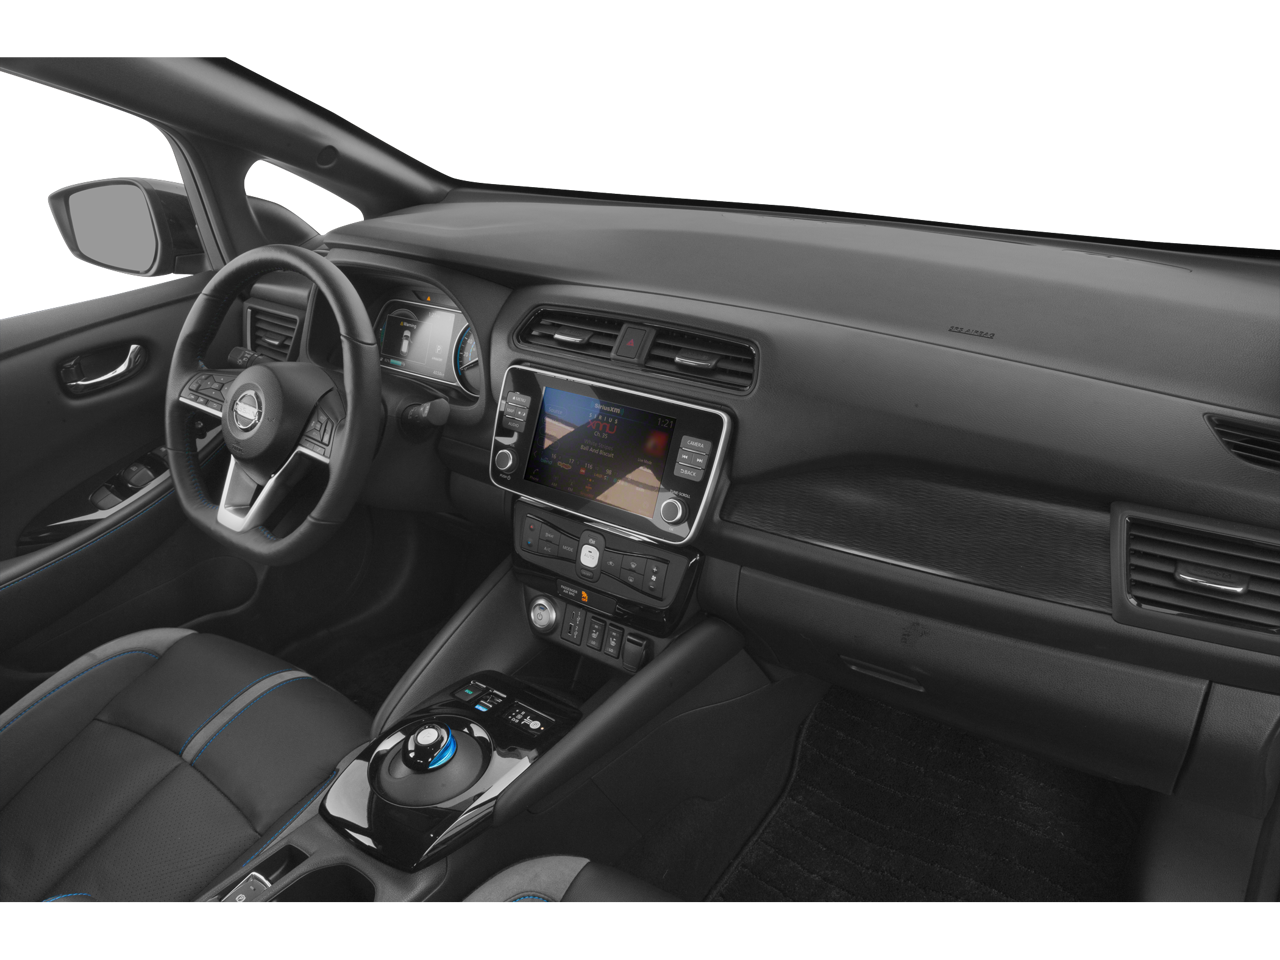 2020 Nissan Leaf SL Plus